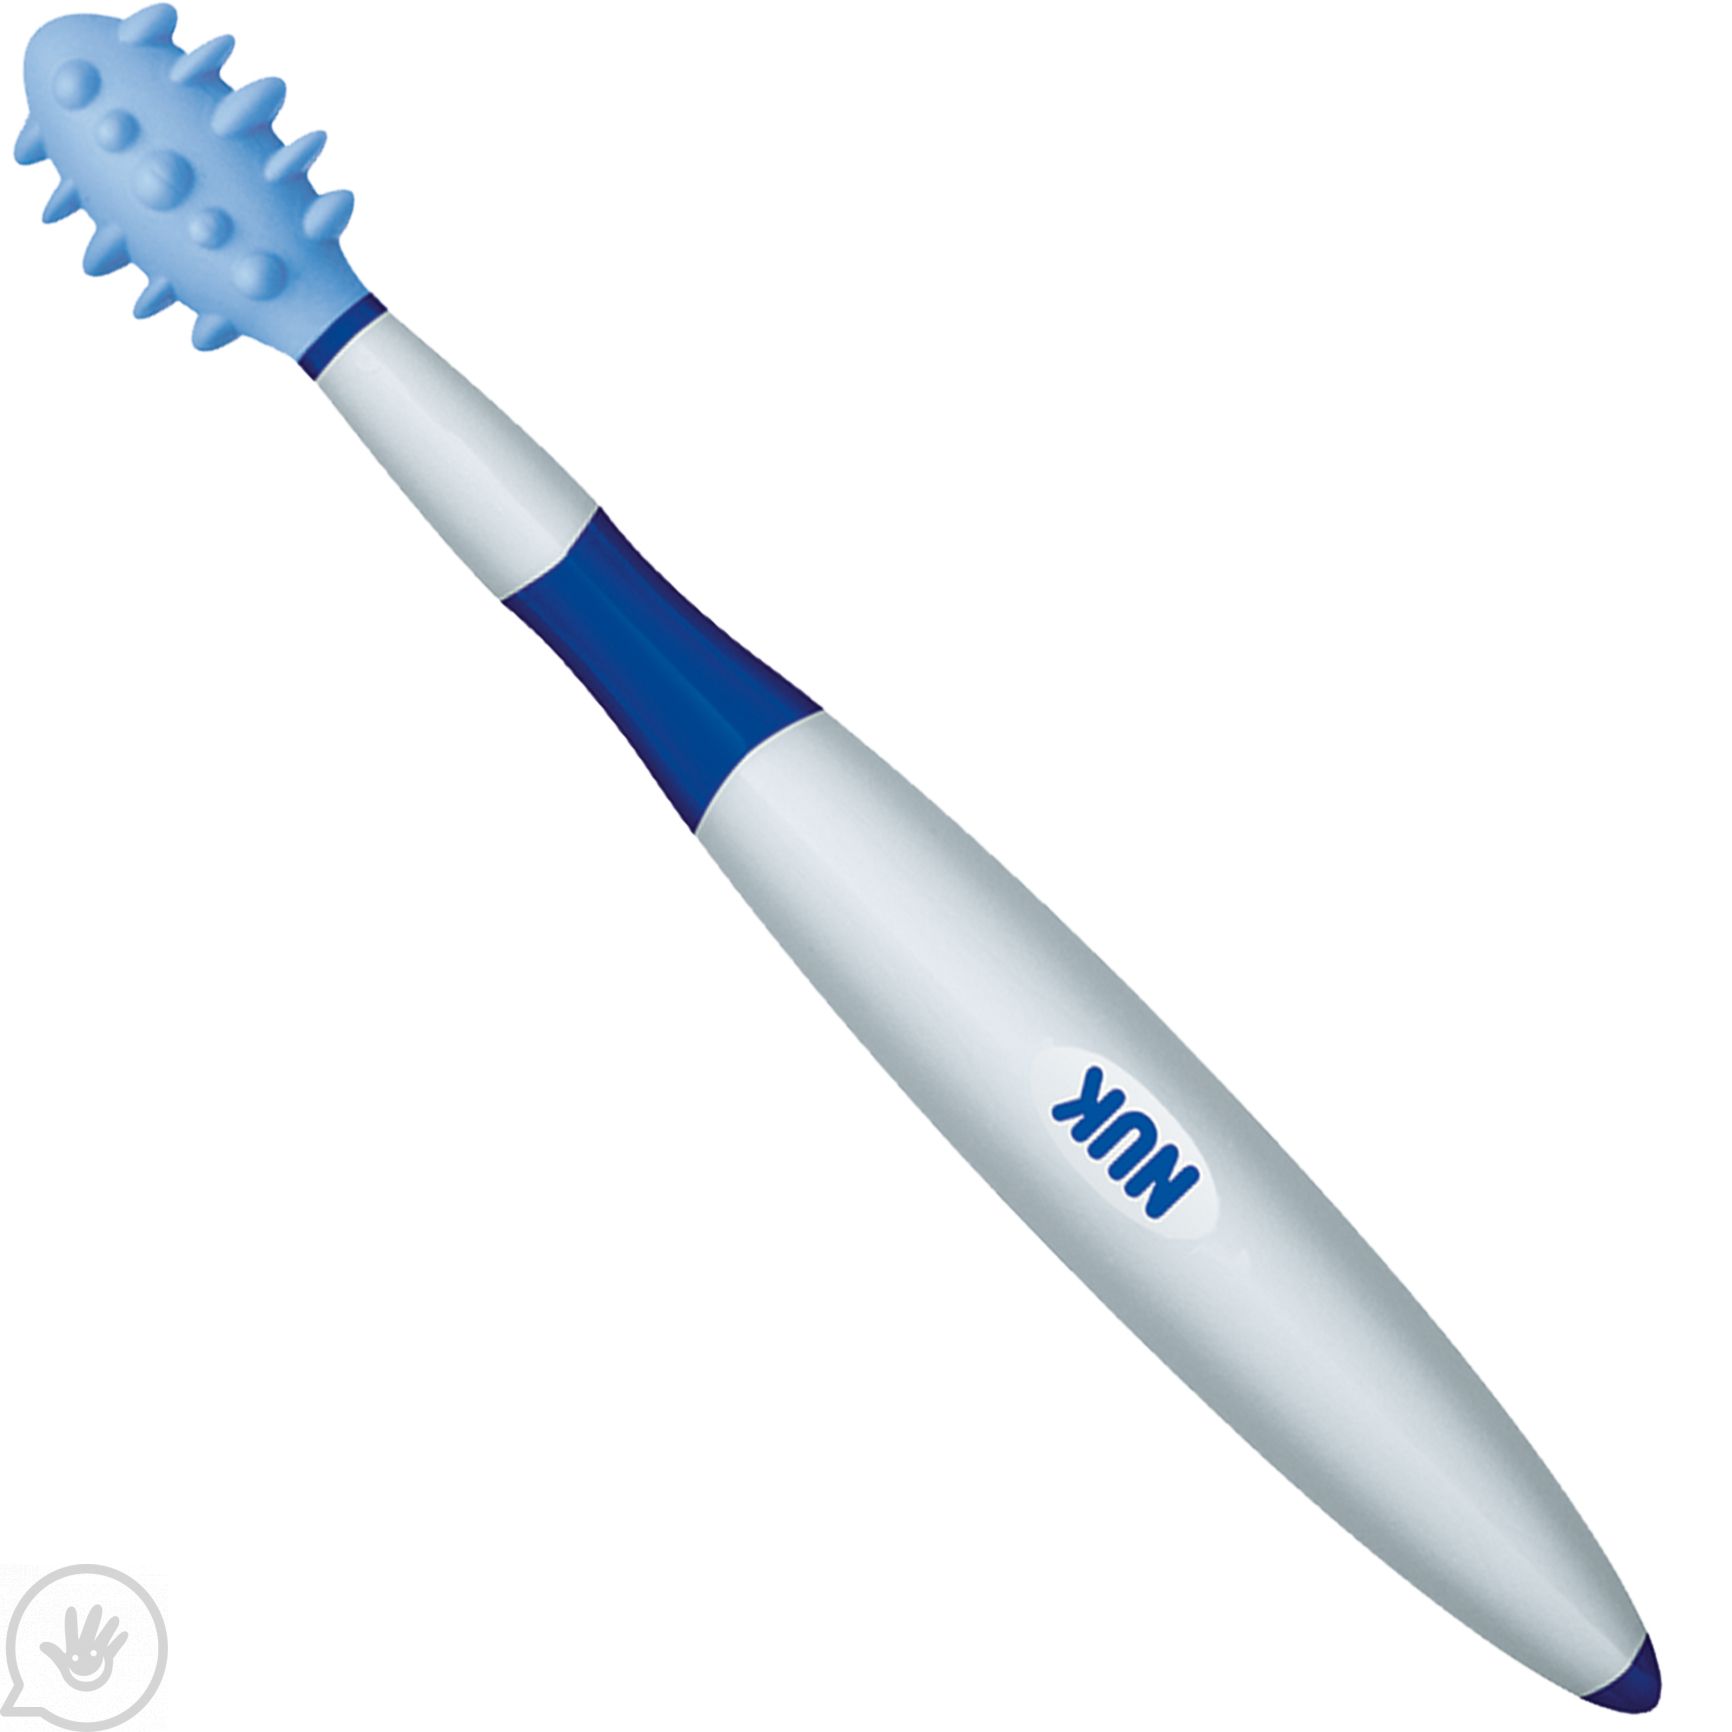 NUK Brush, Baby Teething Oral Massage Tooth Brush